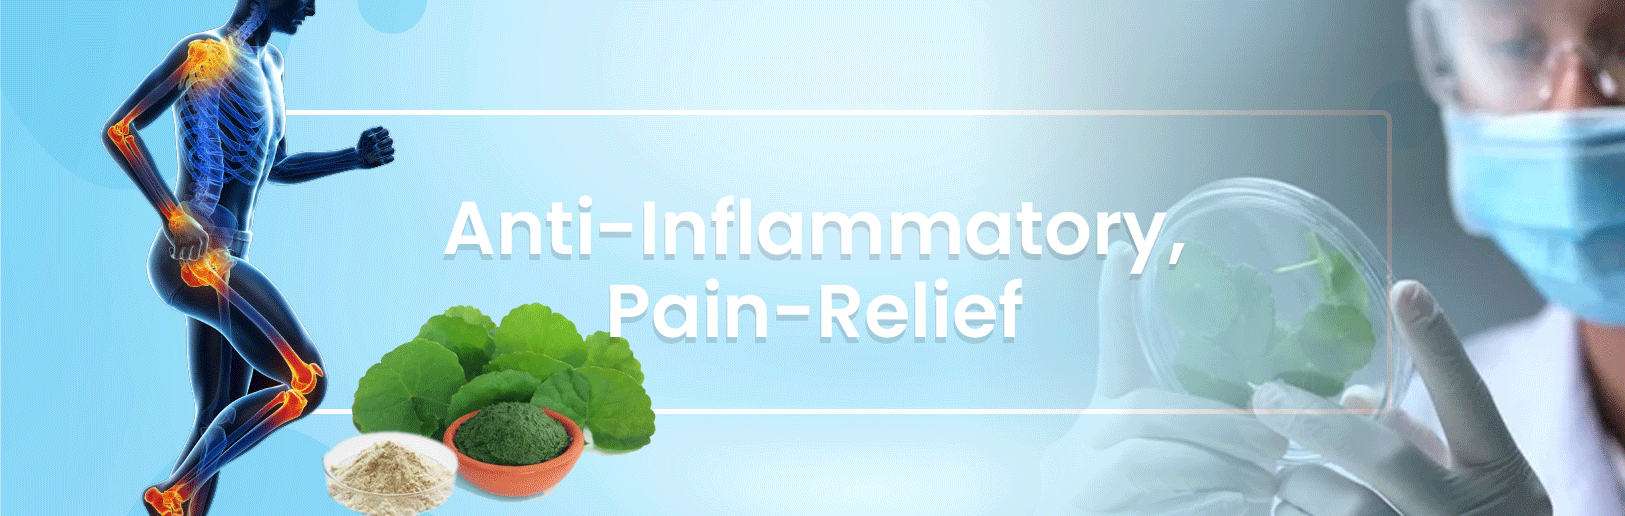 Anti-Inflammatory, Pain-Relief